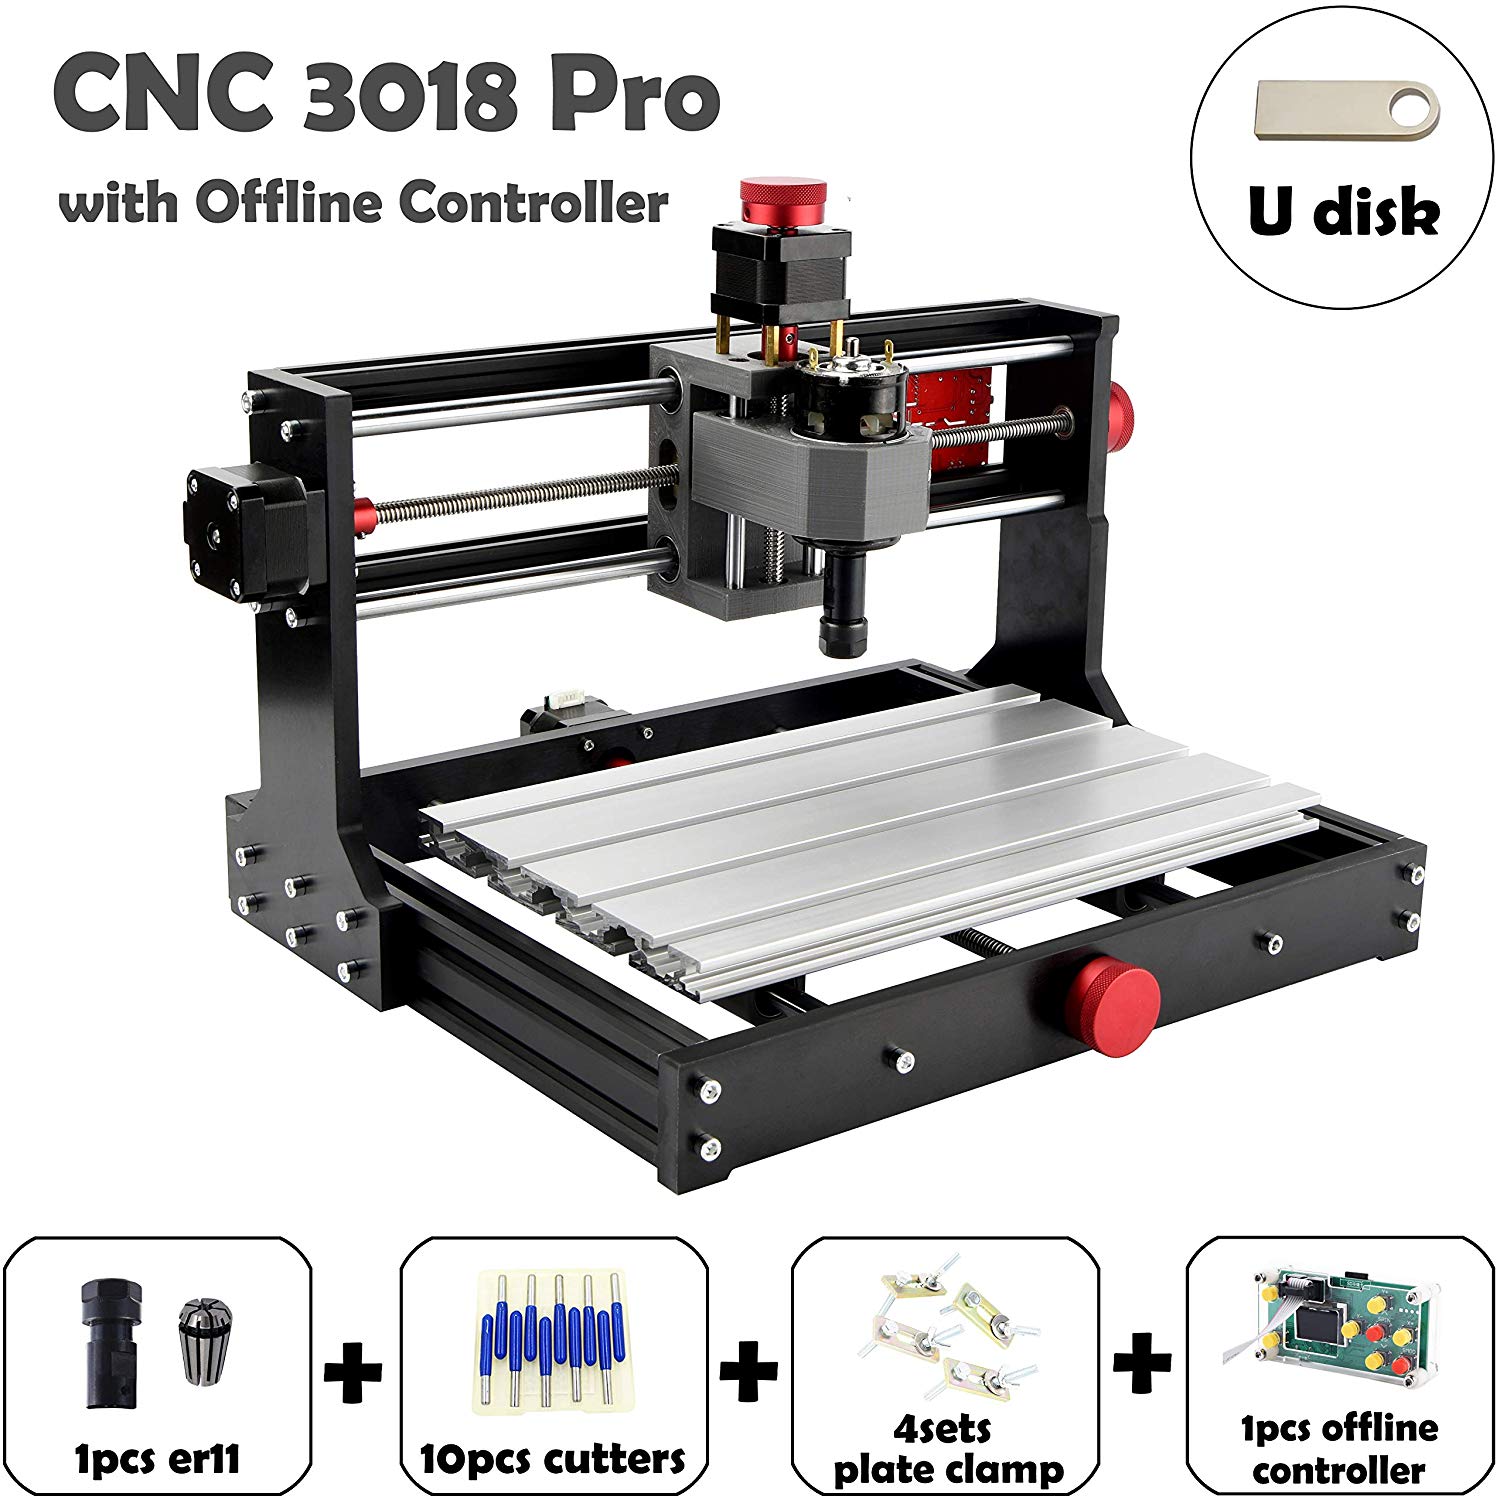 3018 Pro CNC Machine